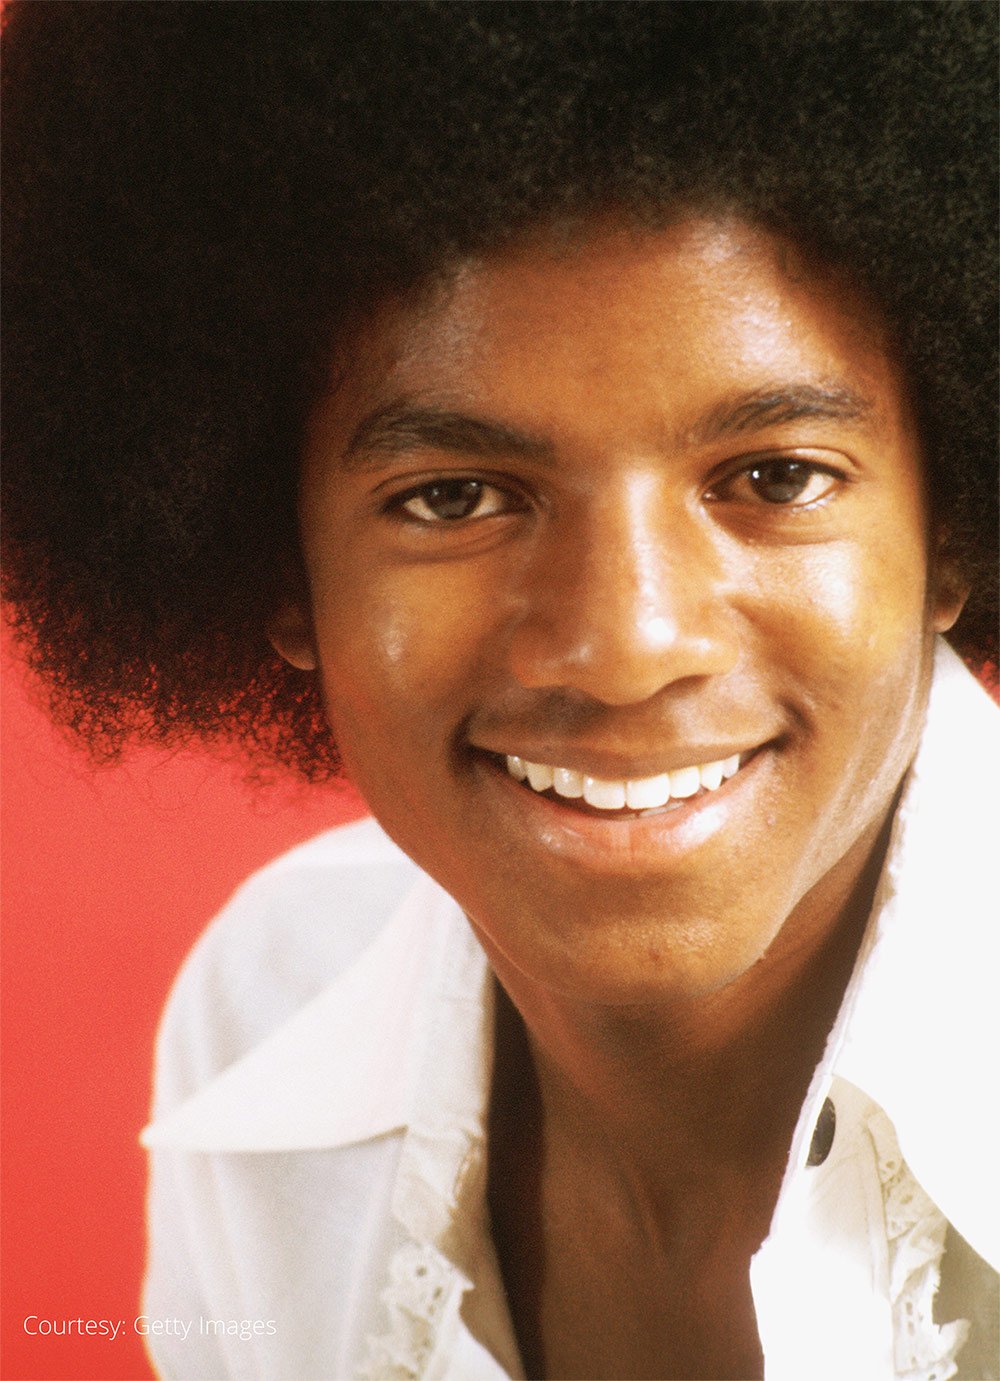 Michael Jackson Portrait Session 1978 - Michael Jackson Official Site